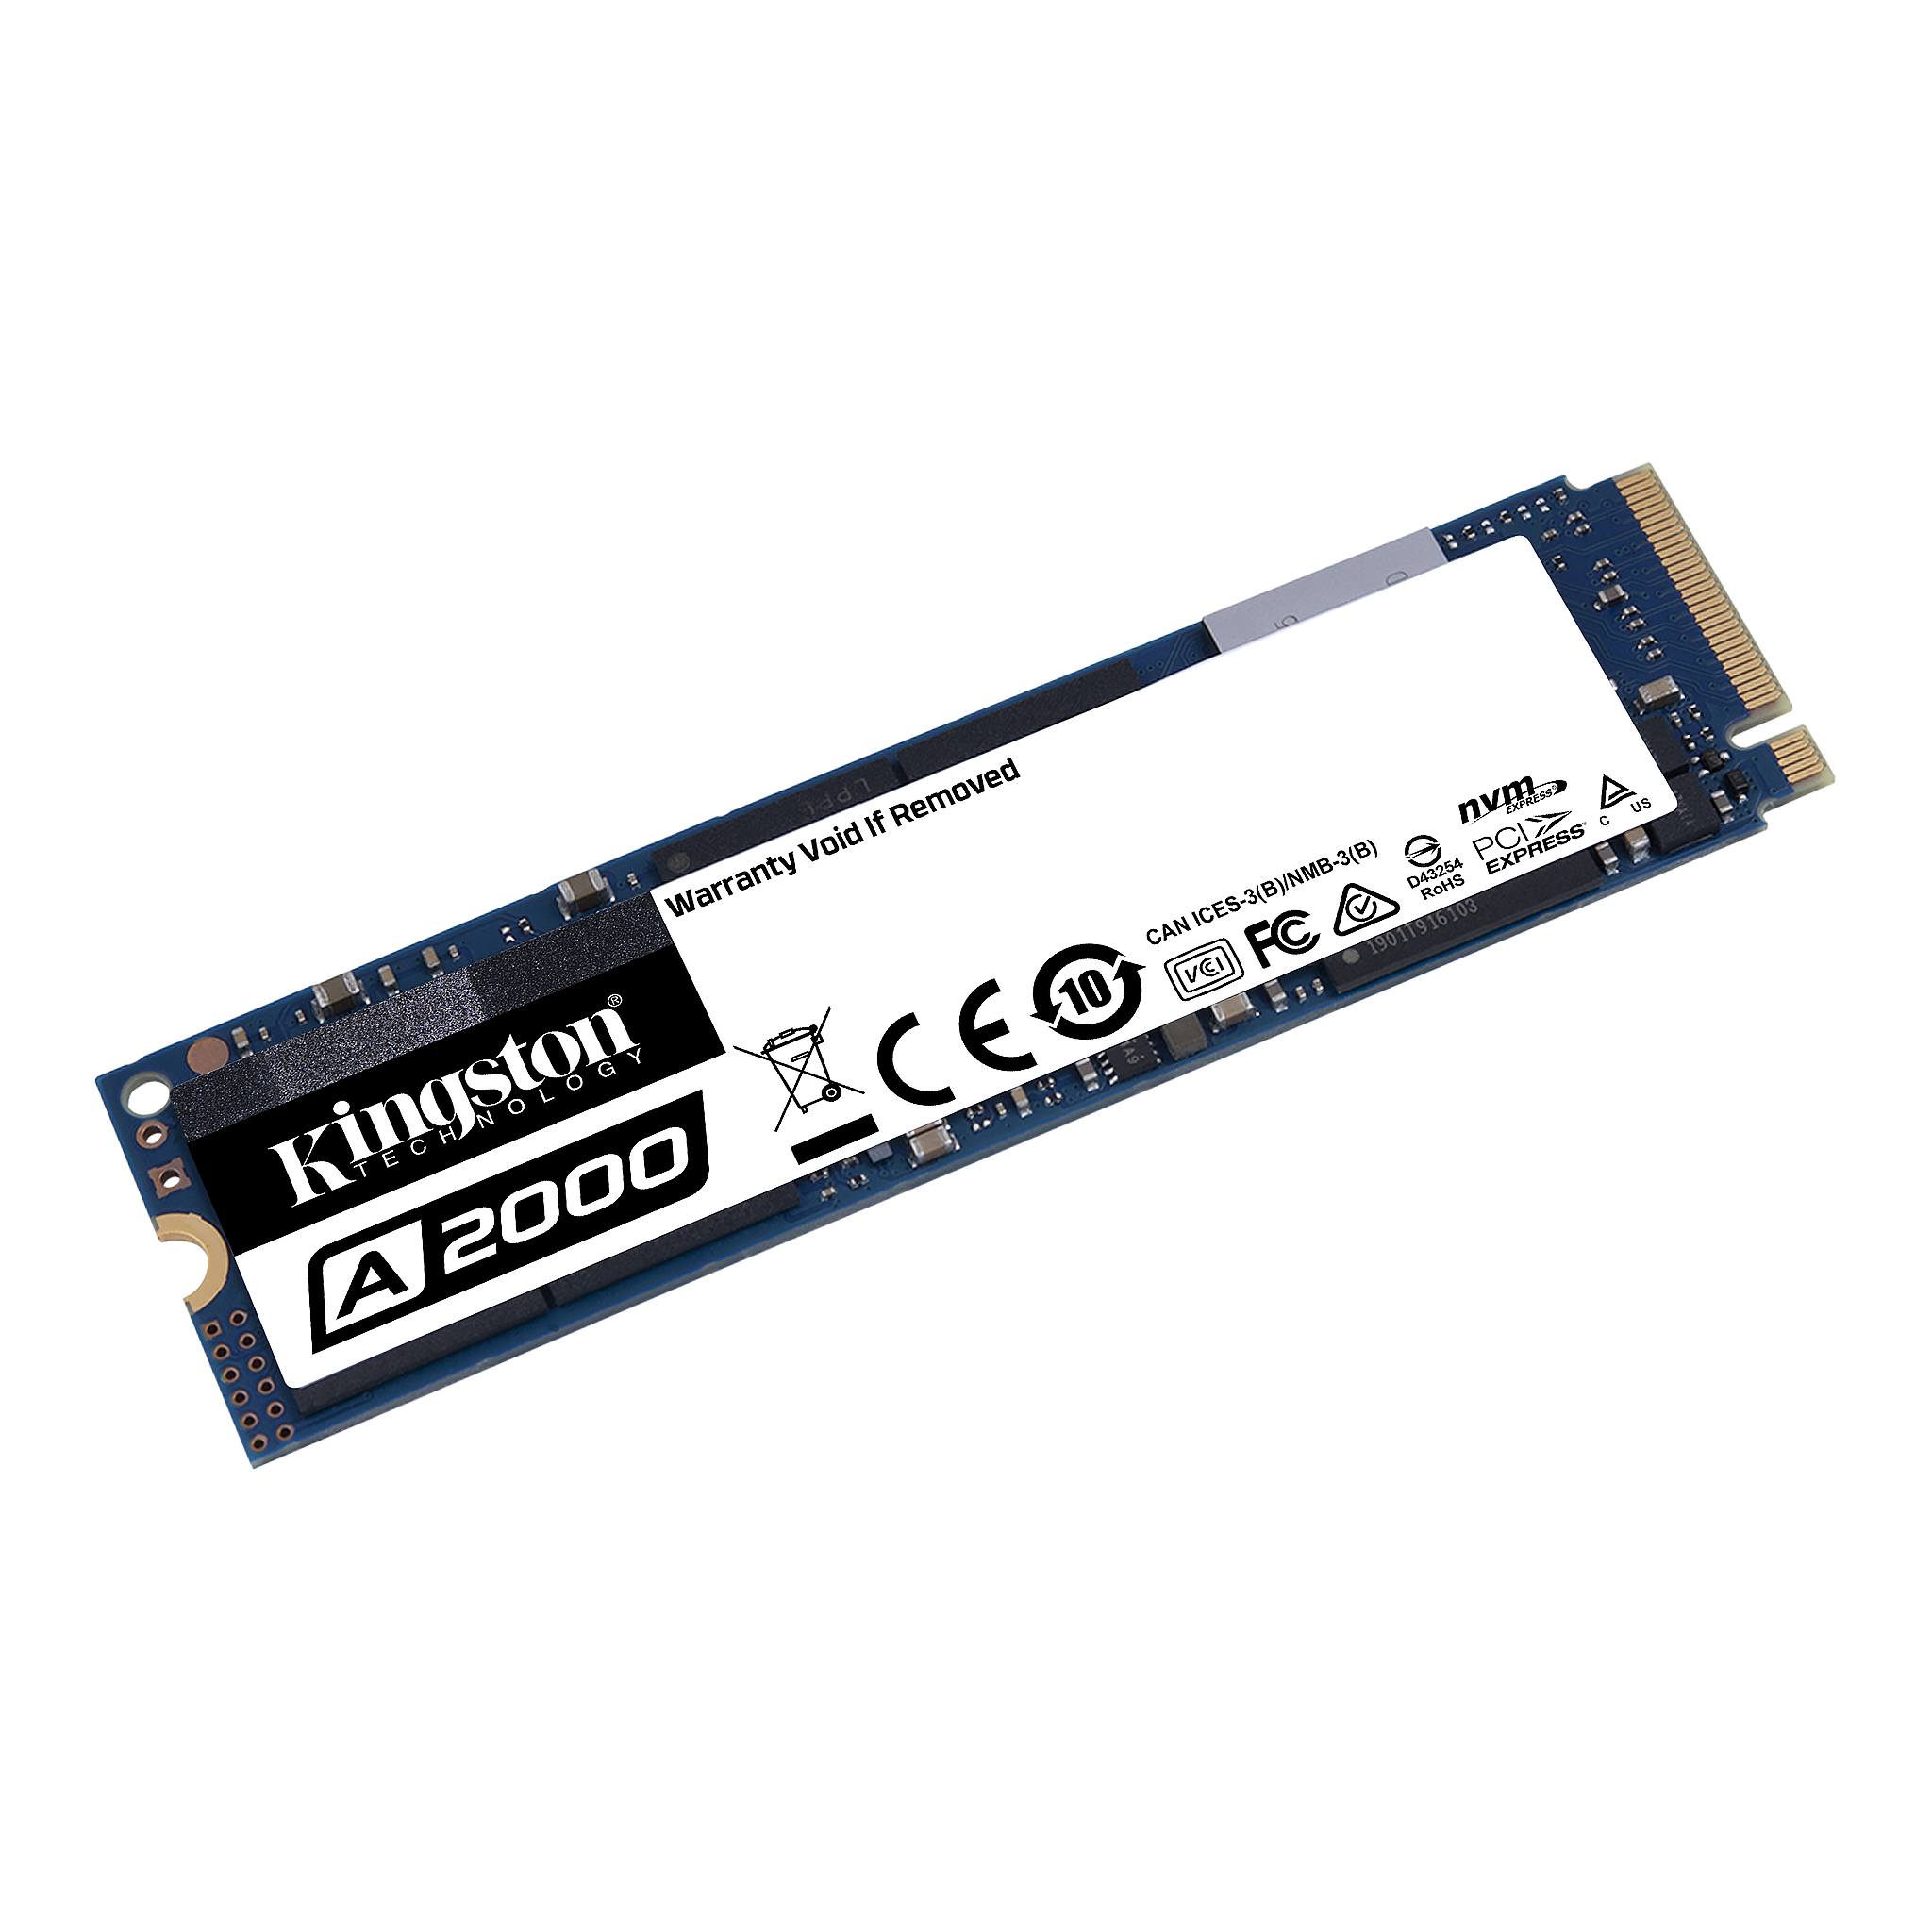 Ổ cứng SSD Kingston A2000 NVMe PCIe Gen 3.0 x4 250G - Hàng Chính Hãng